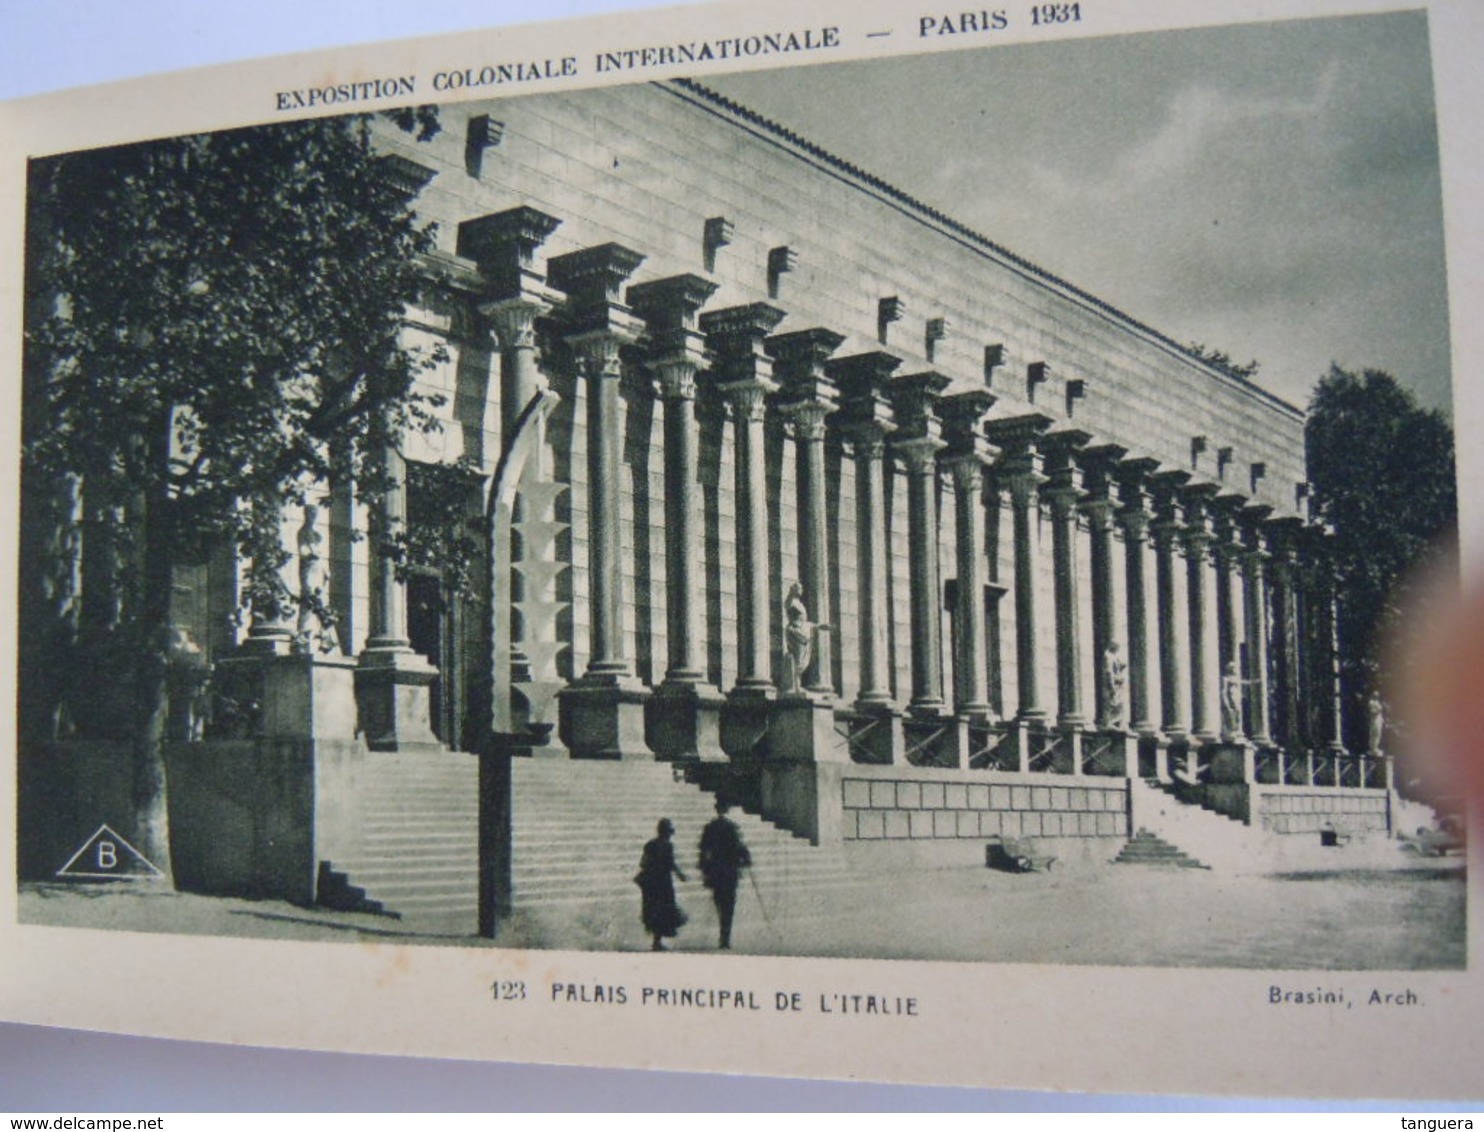 Paris 1931 Promenade à travers l'exposition coloniale internationale 24 cartes detachable carnet Braun en Cie